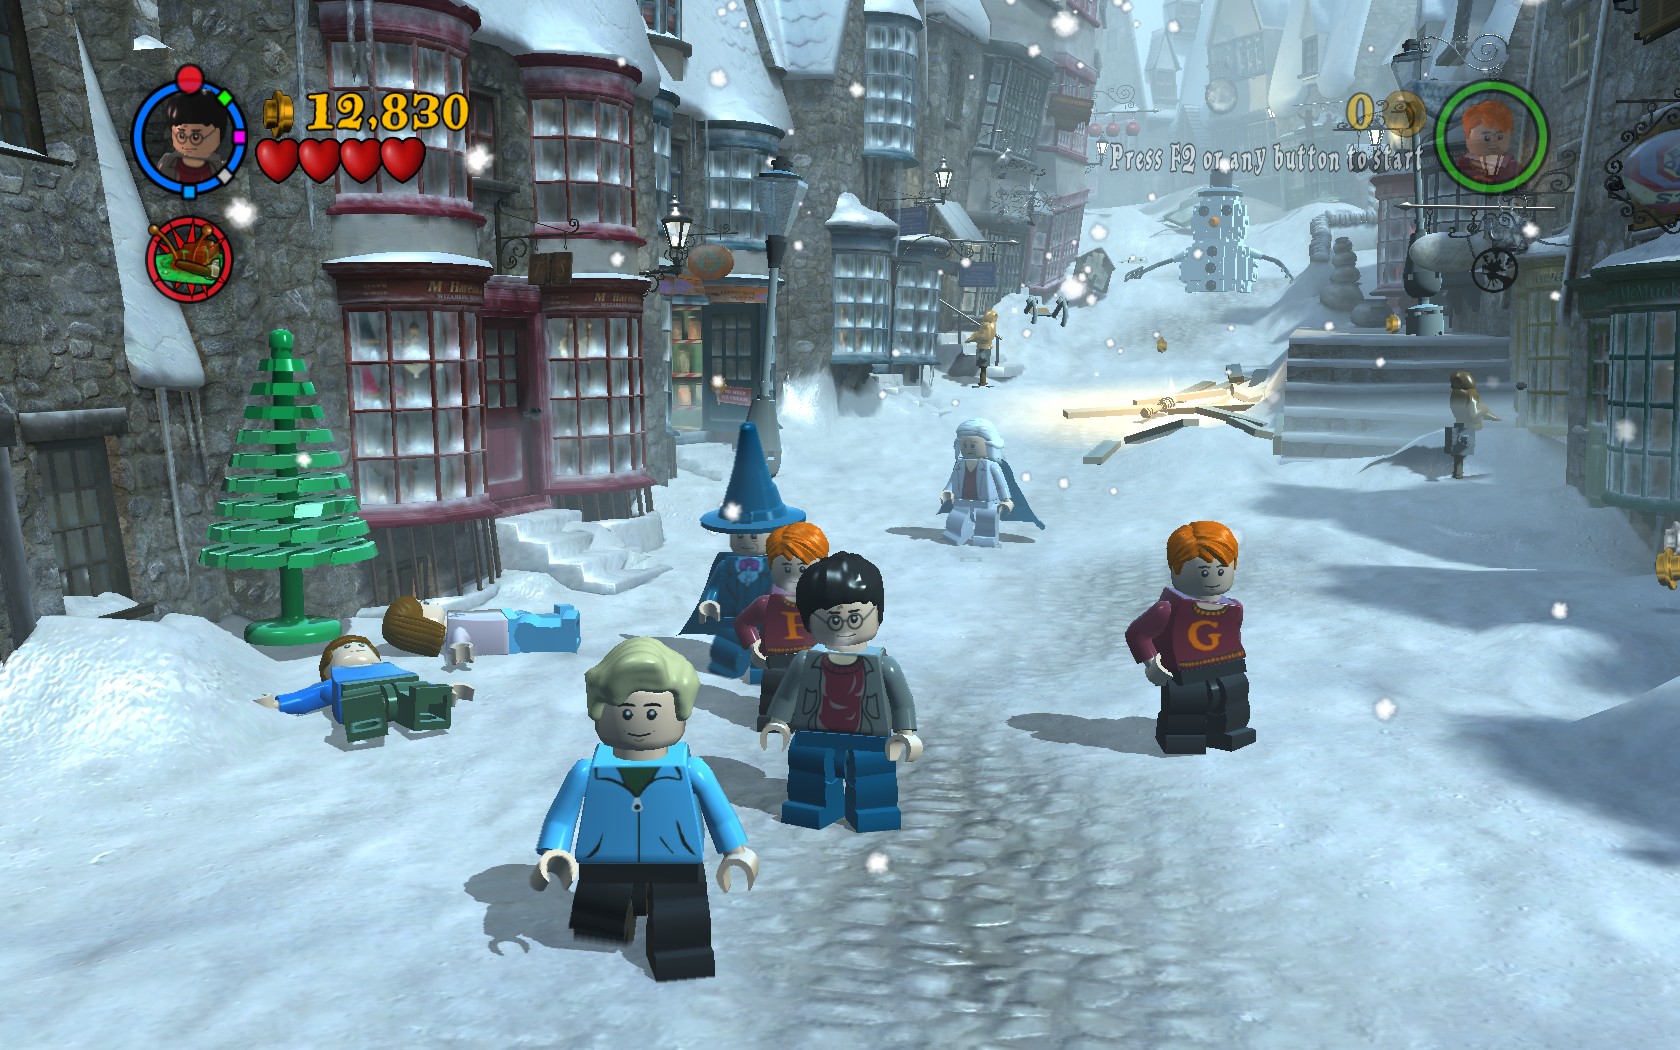 Compre LEGO Harry Potter: Years 1-4 PC Game - Steam Código em